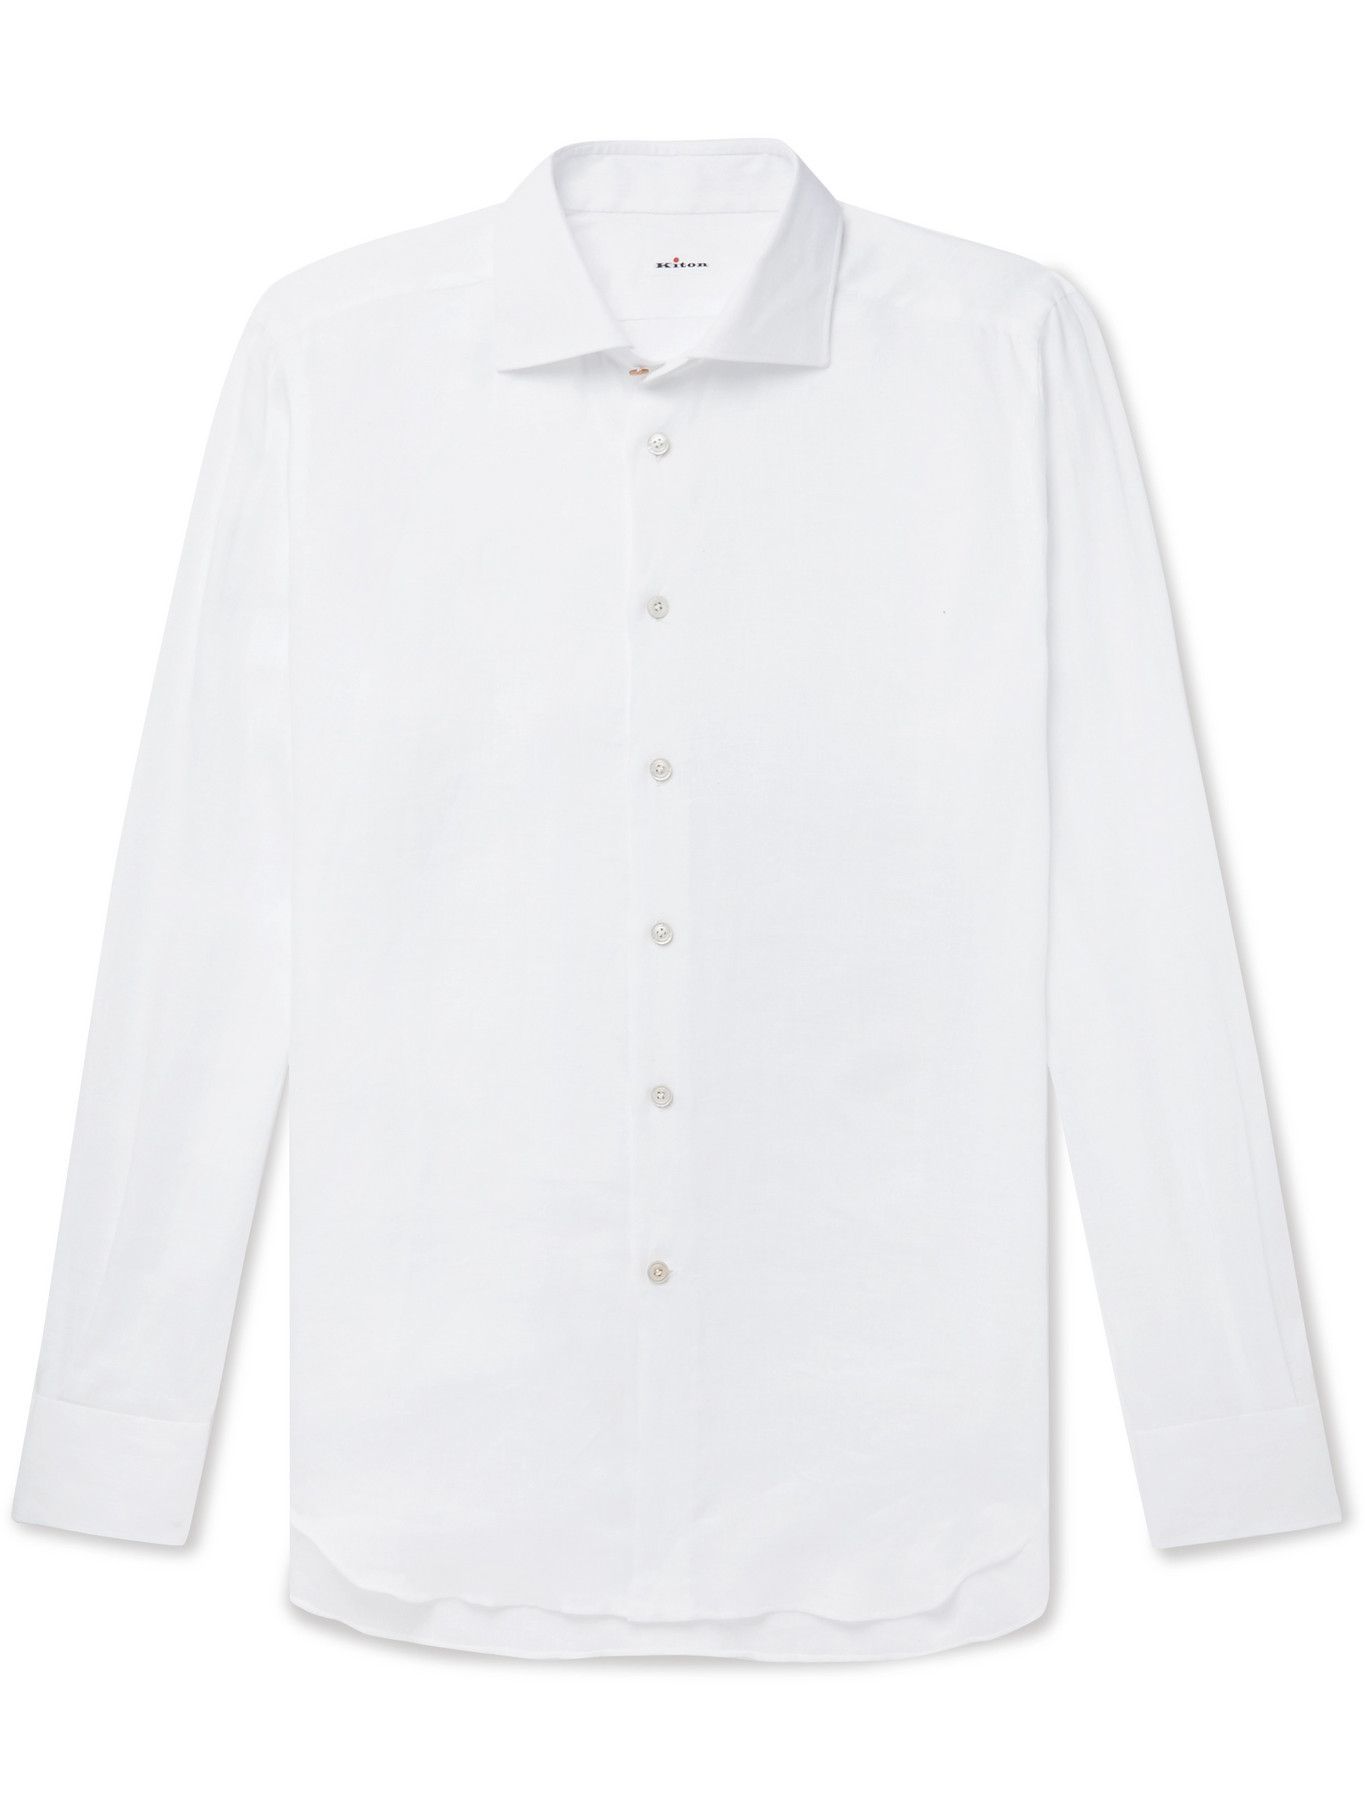 KITON - Linen Shirt - White Kiton